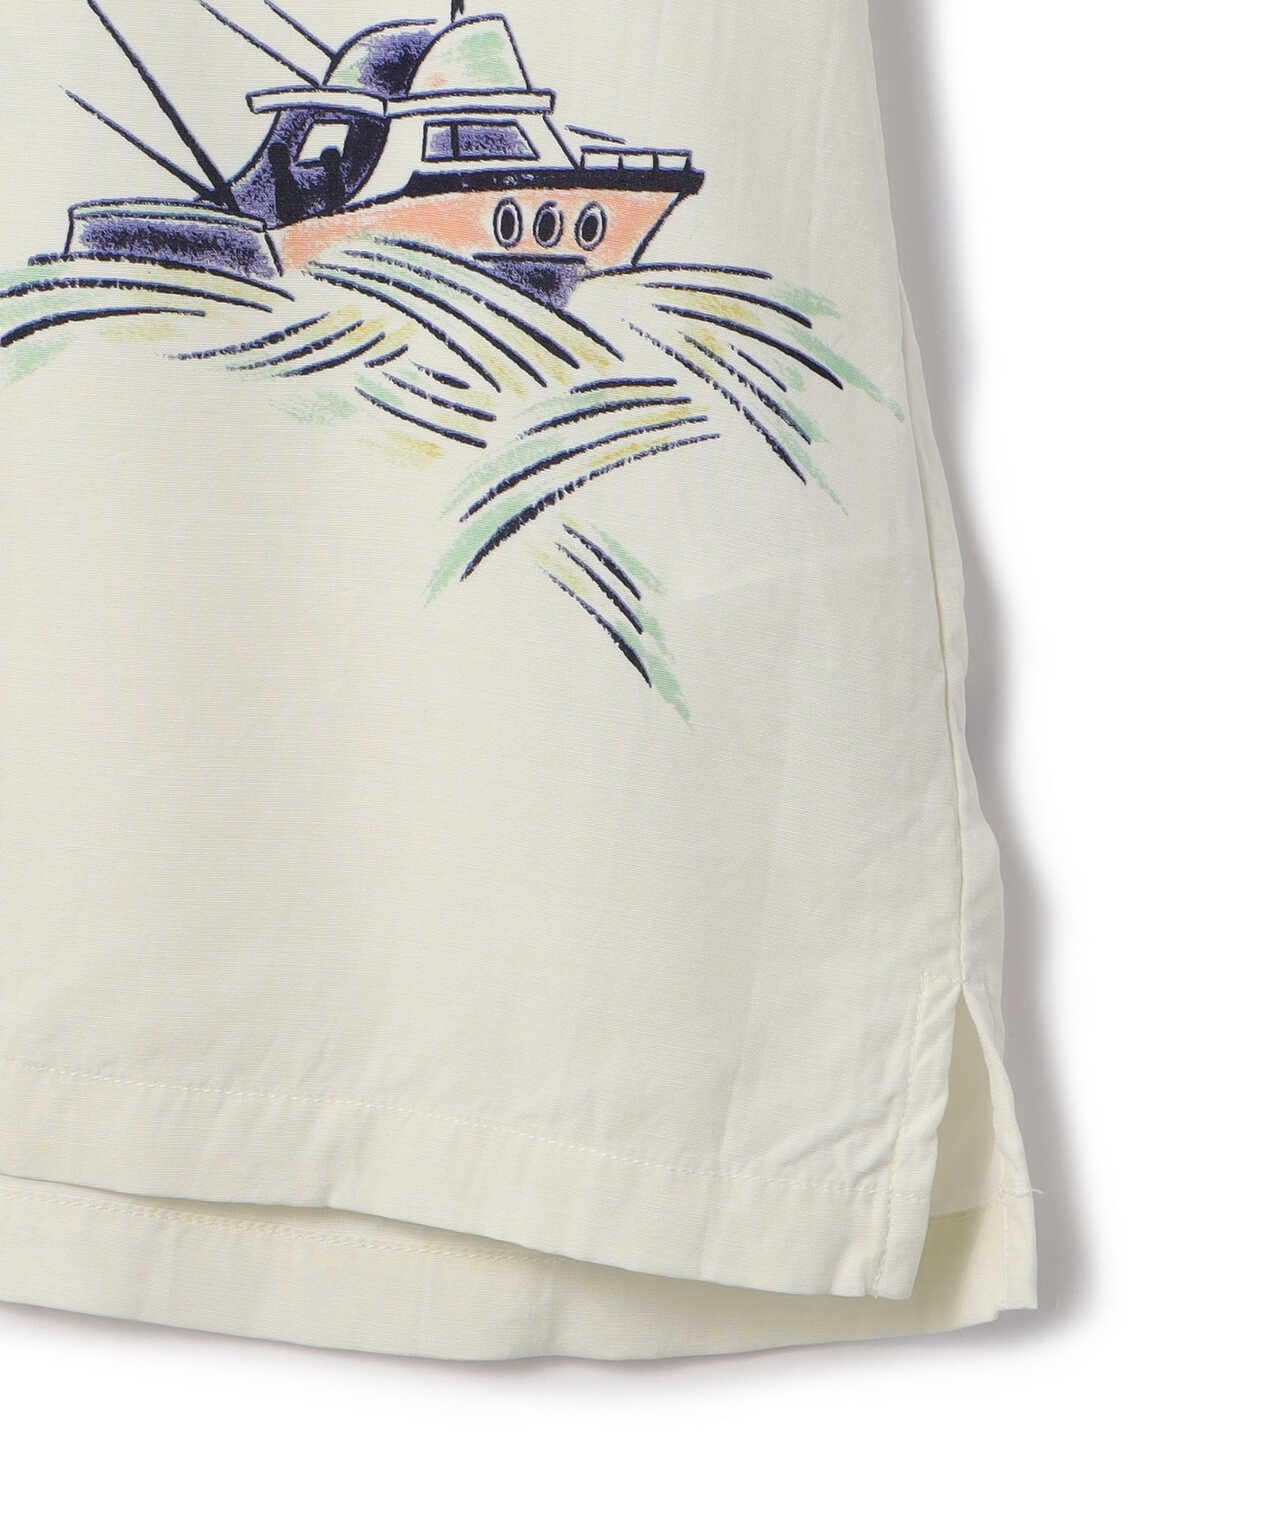 Aloha Blossom/アロハブロッサム/SORDFISH SHIRTS/ソードフィッシュシャツ/アロハシャツ